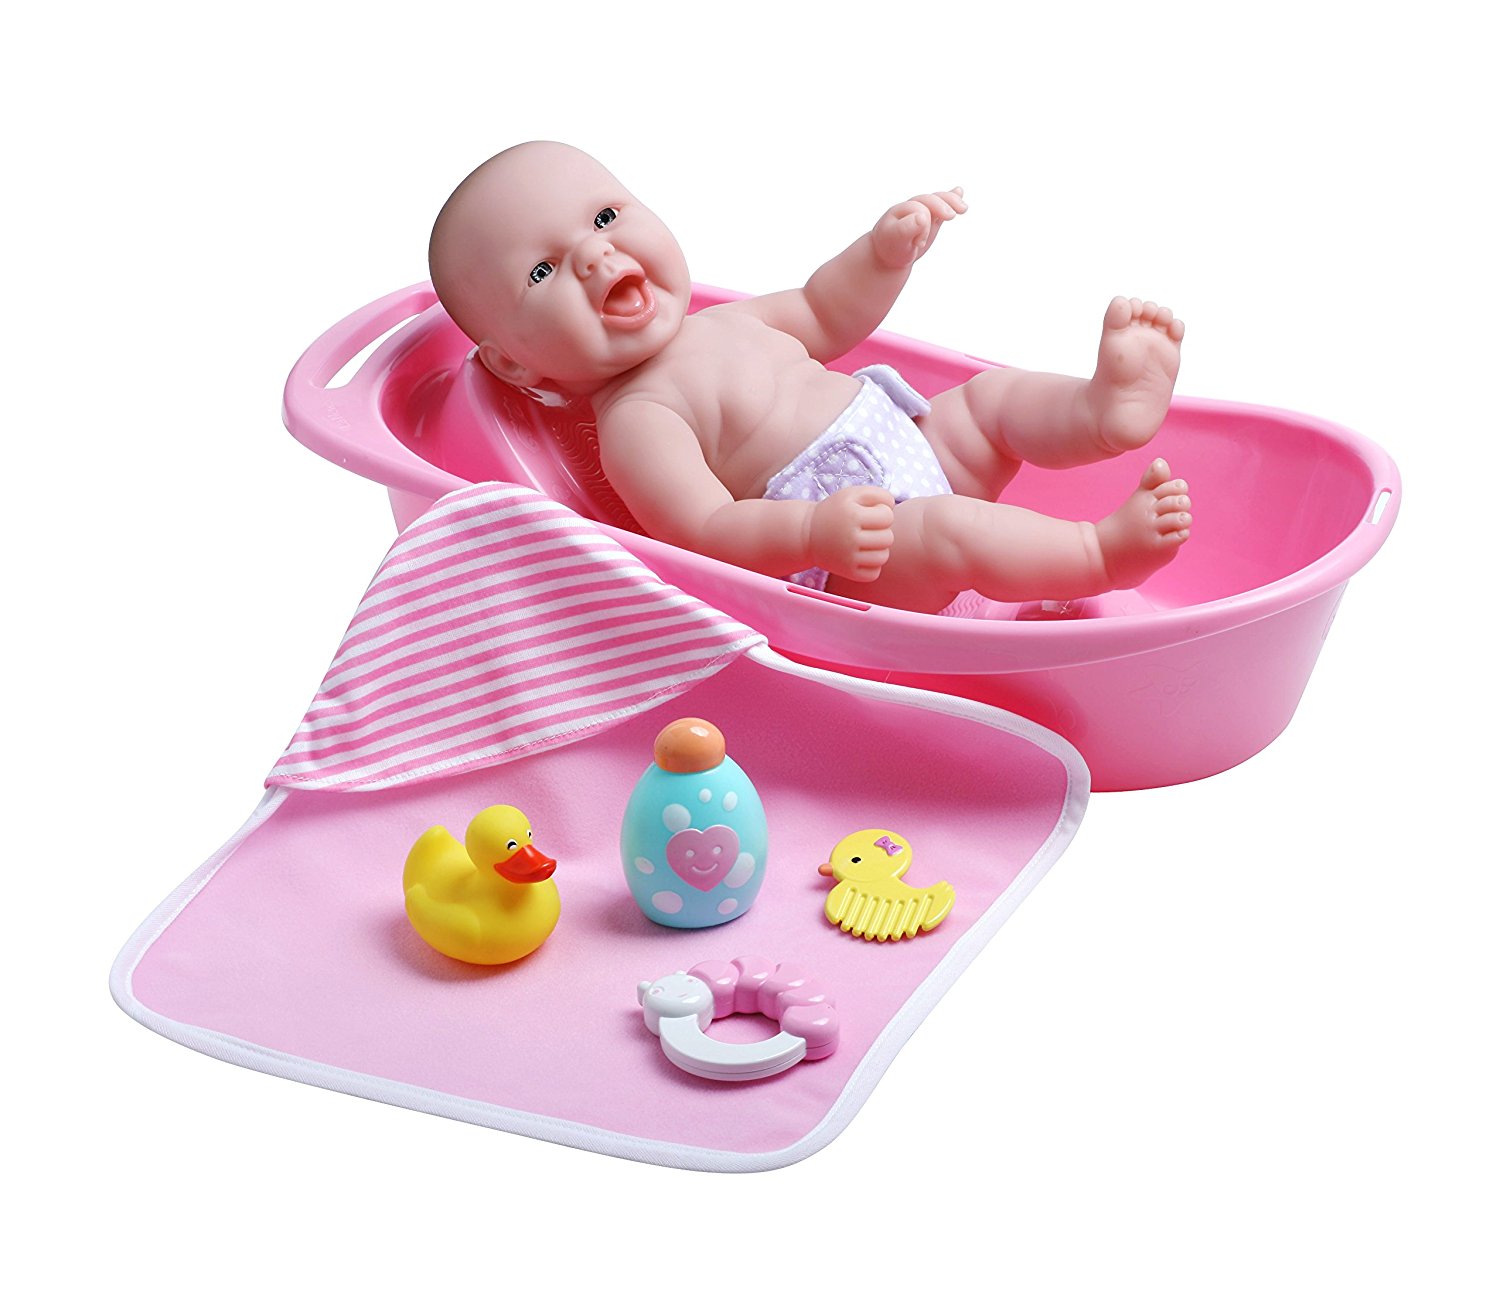 Đồ chơi búp bê tập tắm cho em JC Toys La Newborn Realistic Baby Doll Bathtub Gift Set Featuring